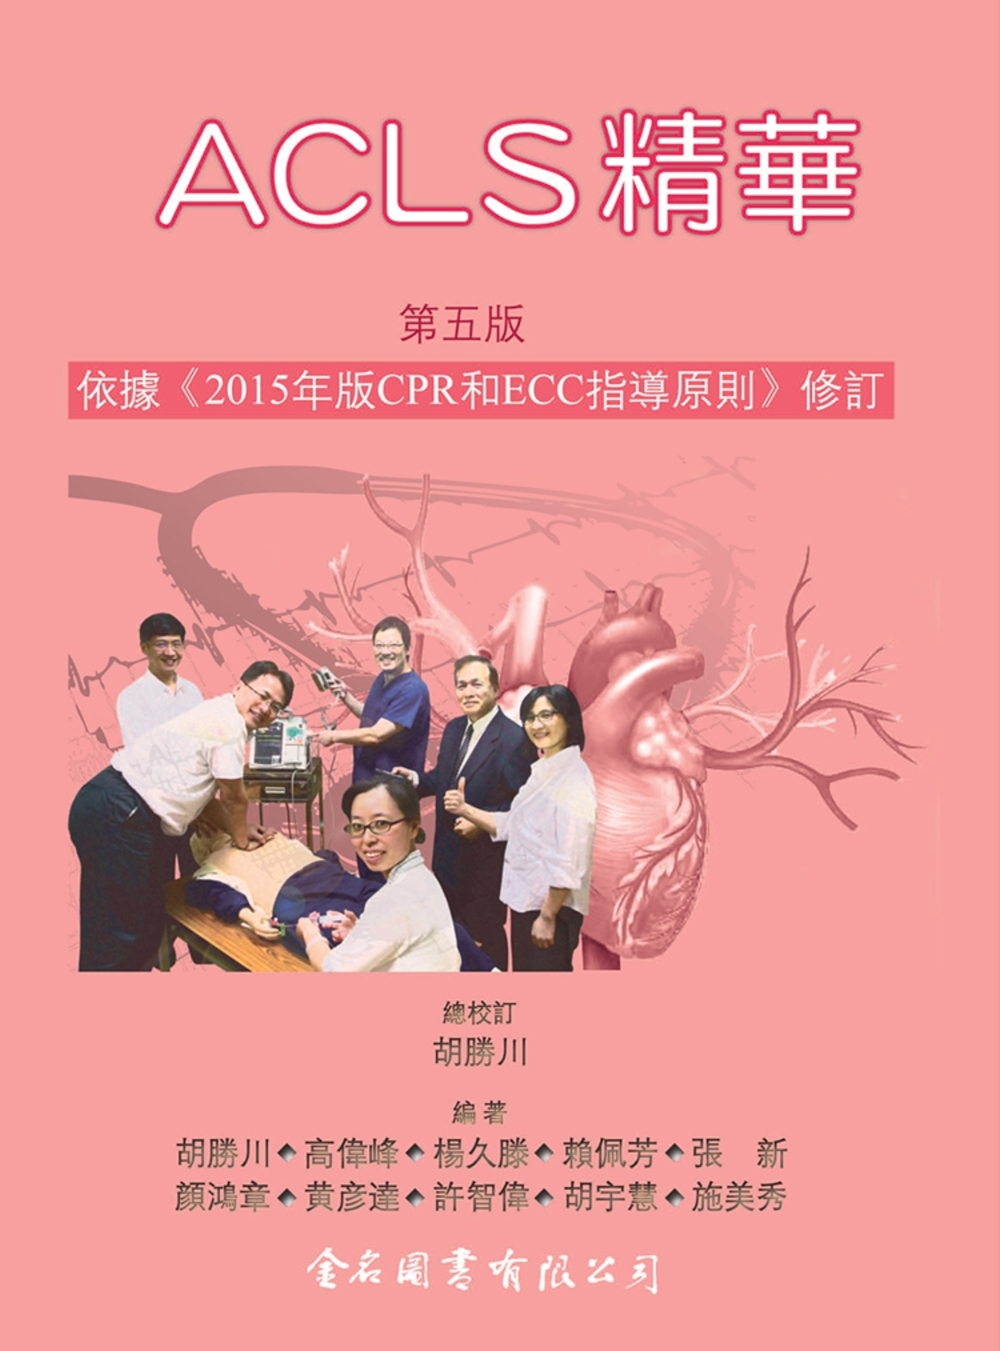 ACLS精華(第五版)